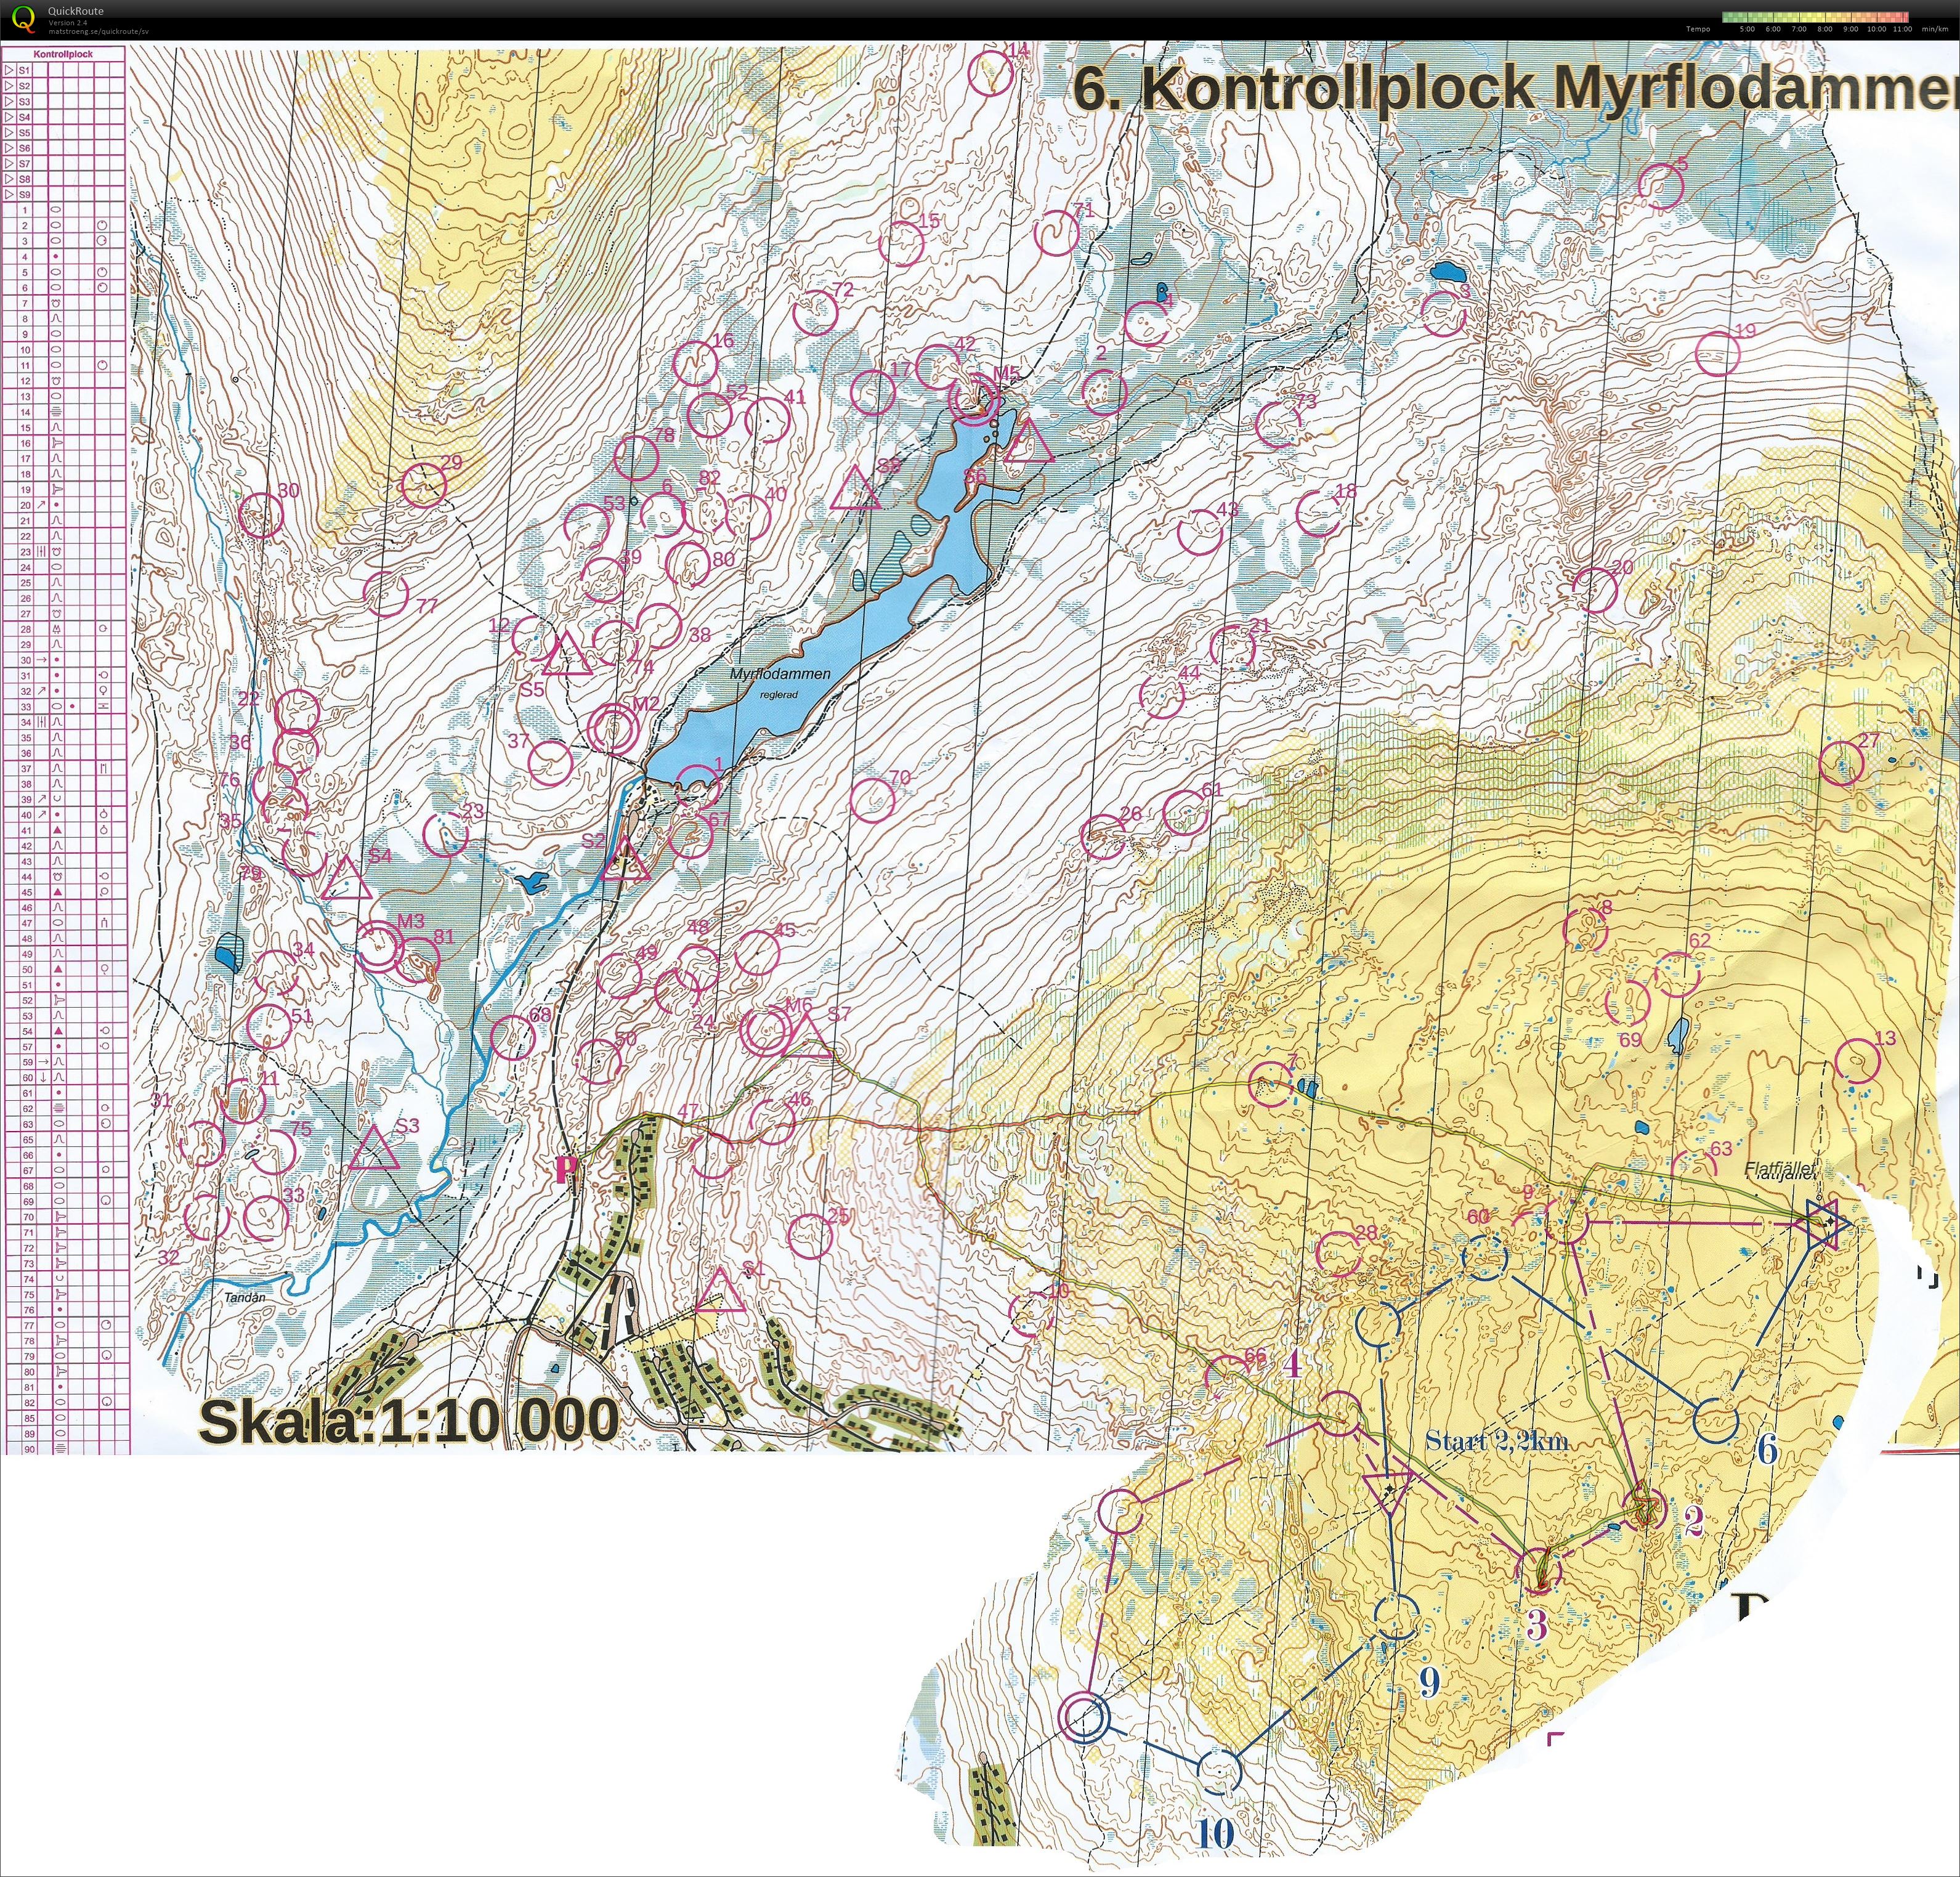 Kontrollplock/slalom försök  rikslägret (2016-06-28)